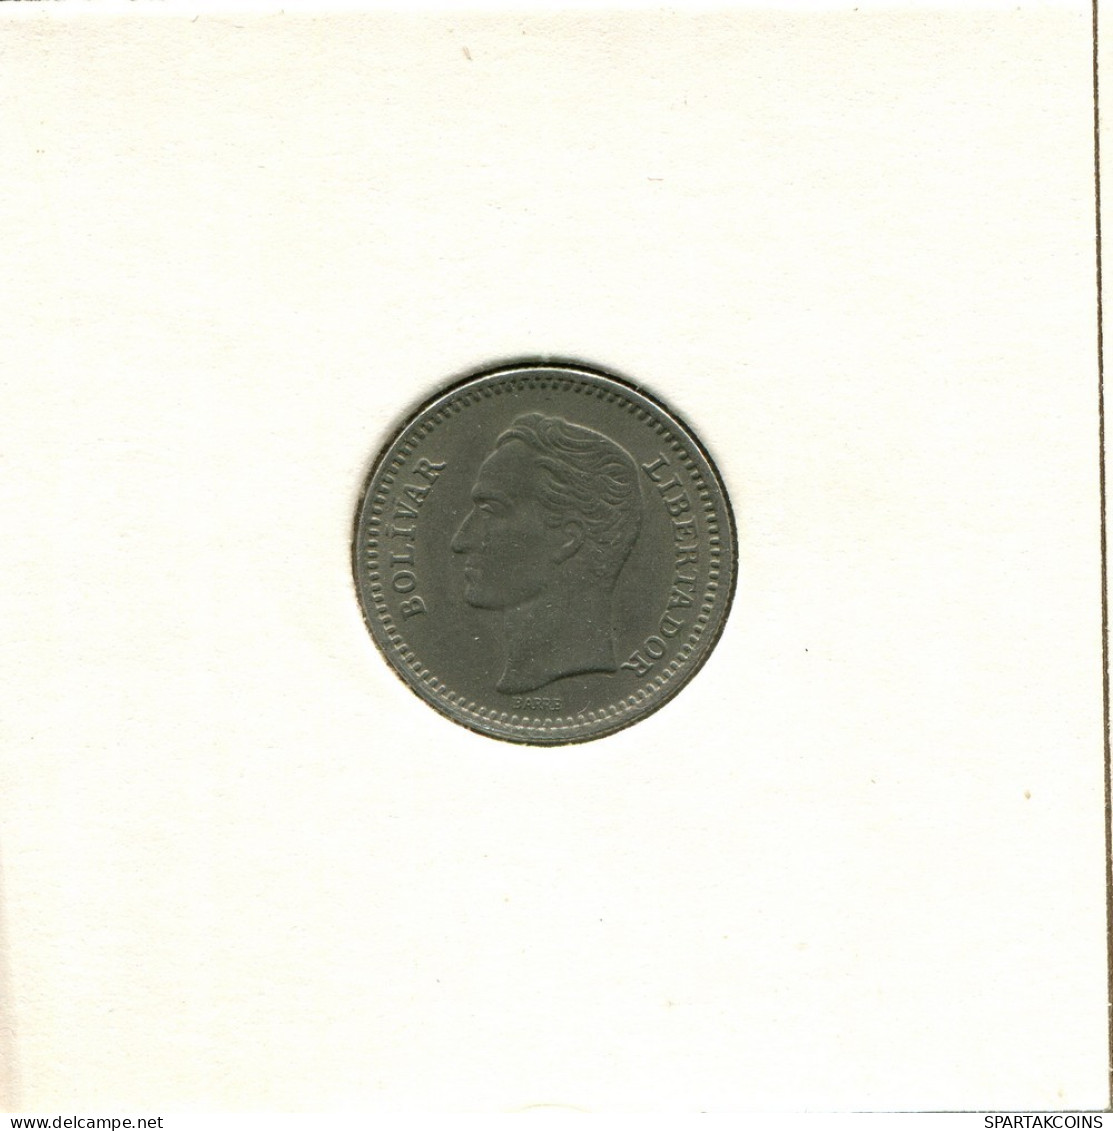 25 CENTIMOS 1965 VENEZUELA Moneda #AT023.E.A - Venezuela